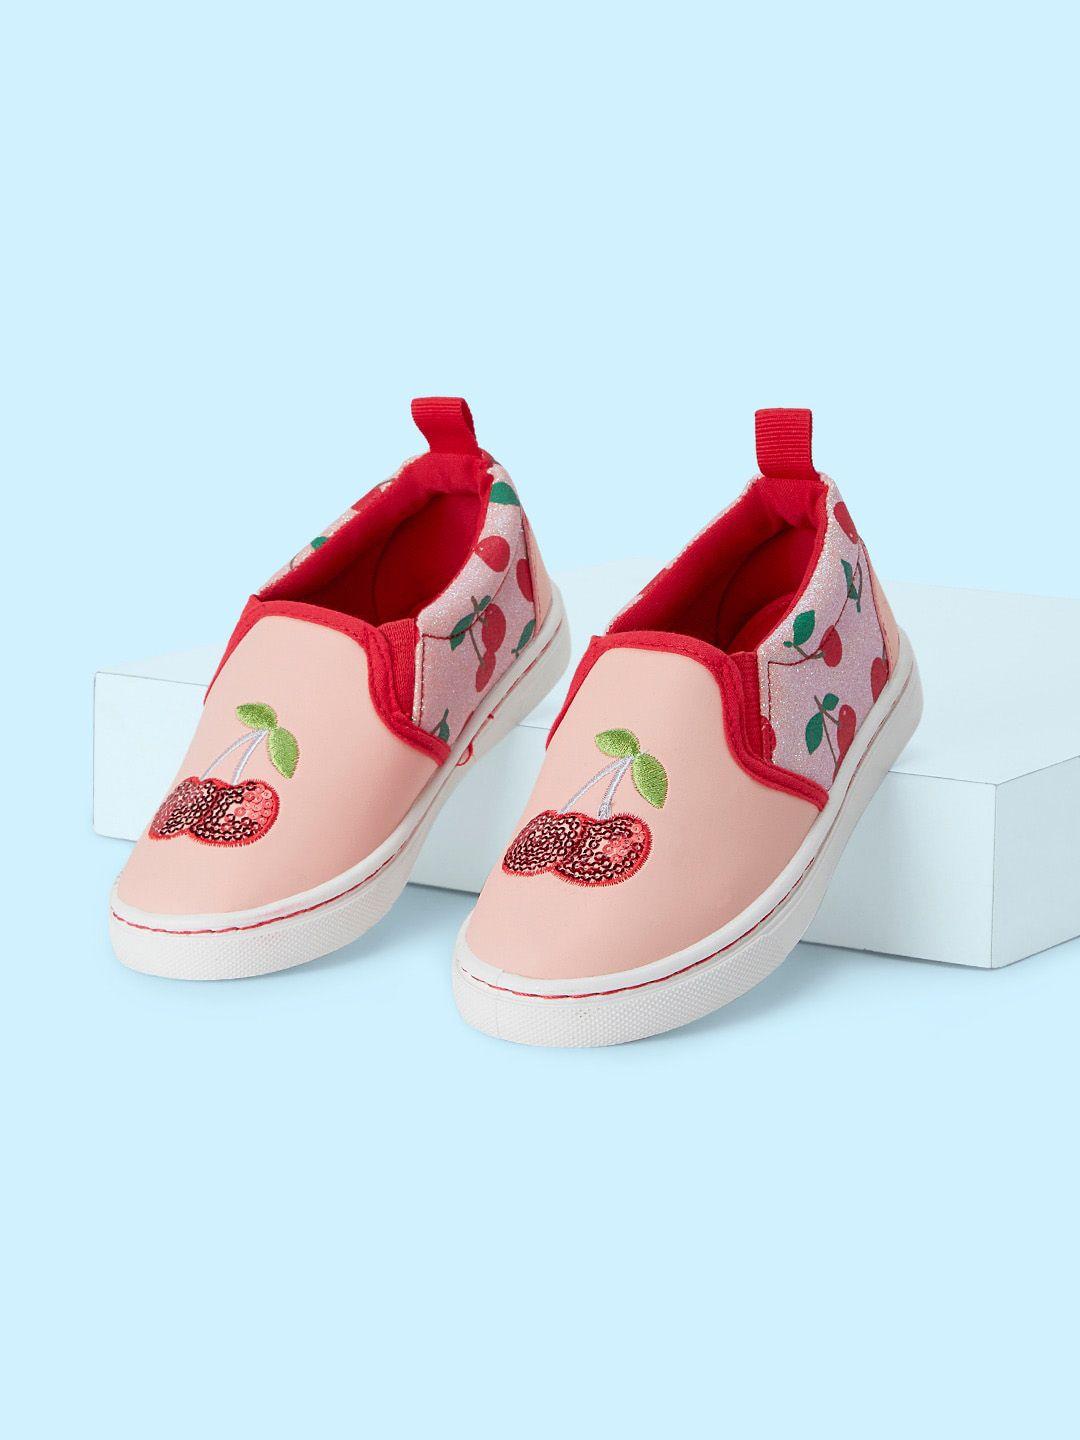 pantaloons junior girls printed embellished slip on sneakers